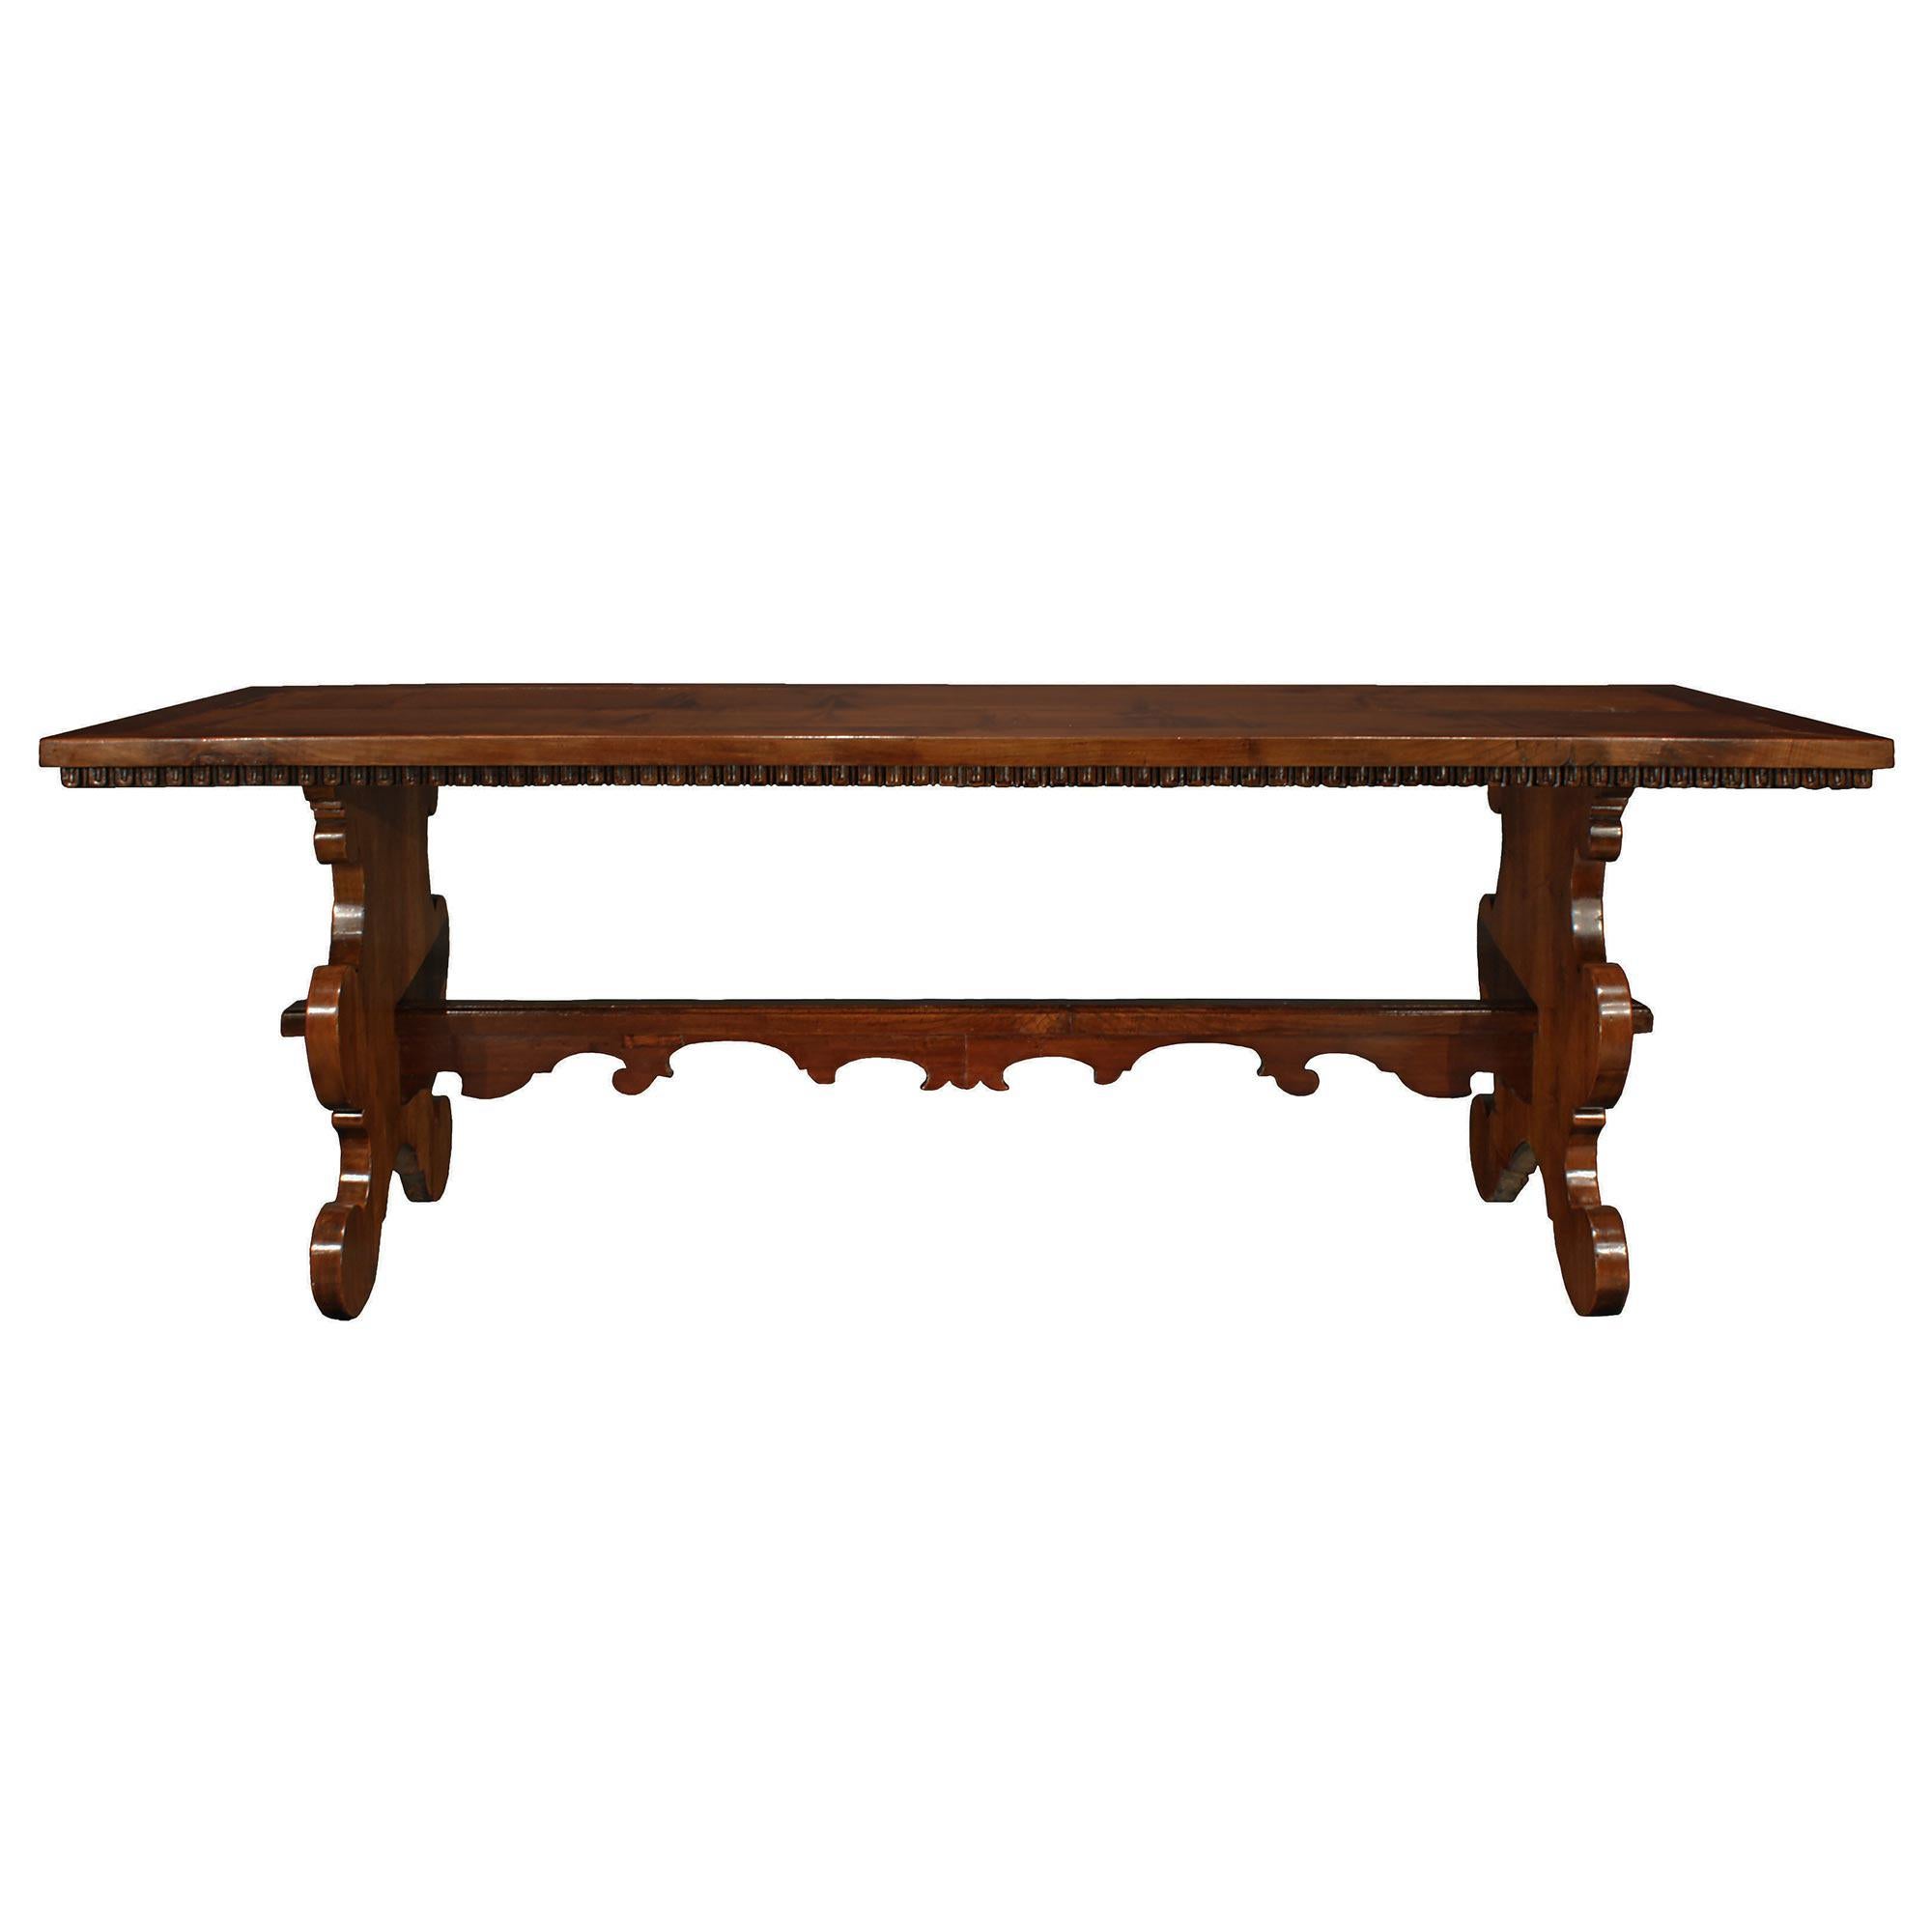 Italian 18th Century Solid Walnut Trestle Table from Tuscany